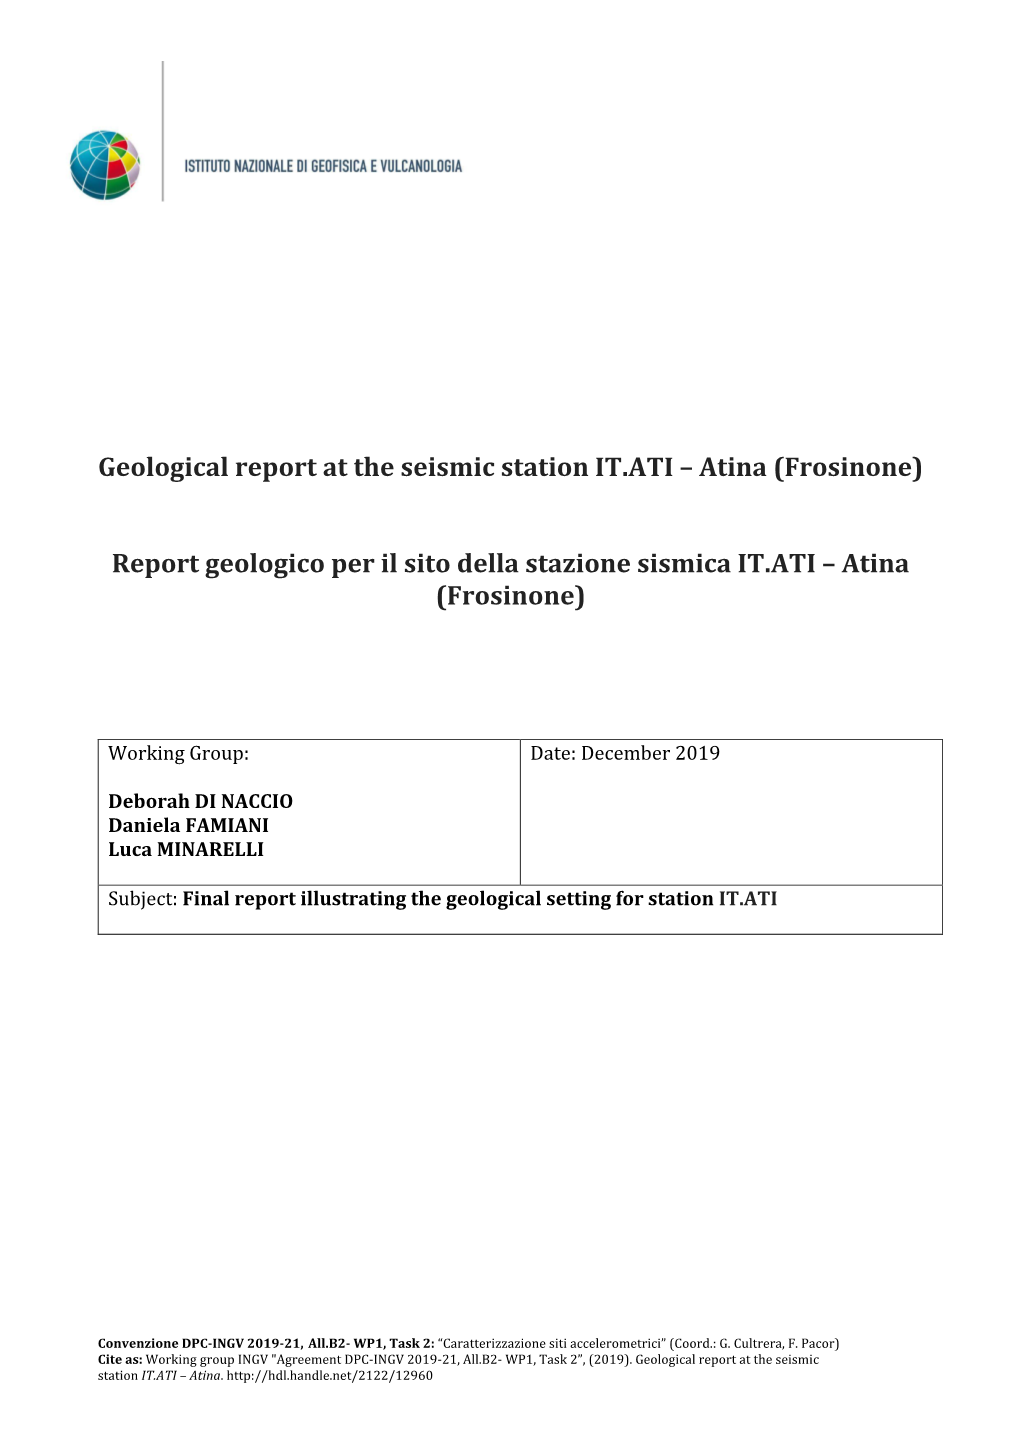 Atina (Frosinone) Report Geologico Per Il Sito Della Stazione Sismica IT.ATI